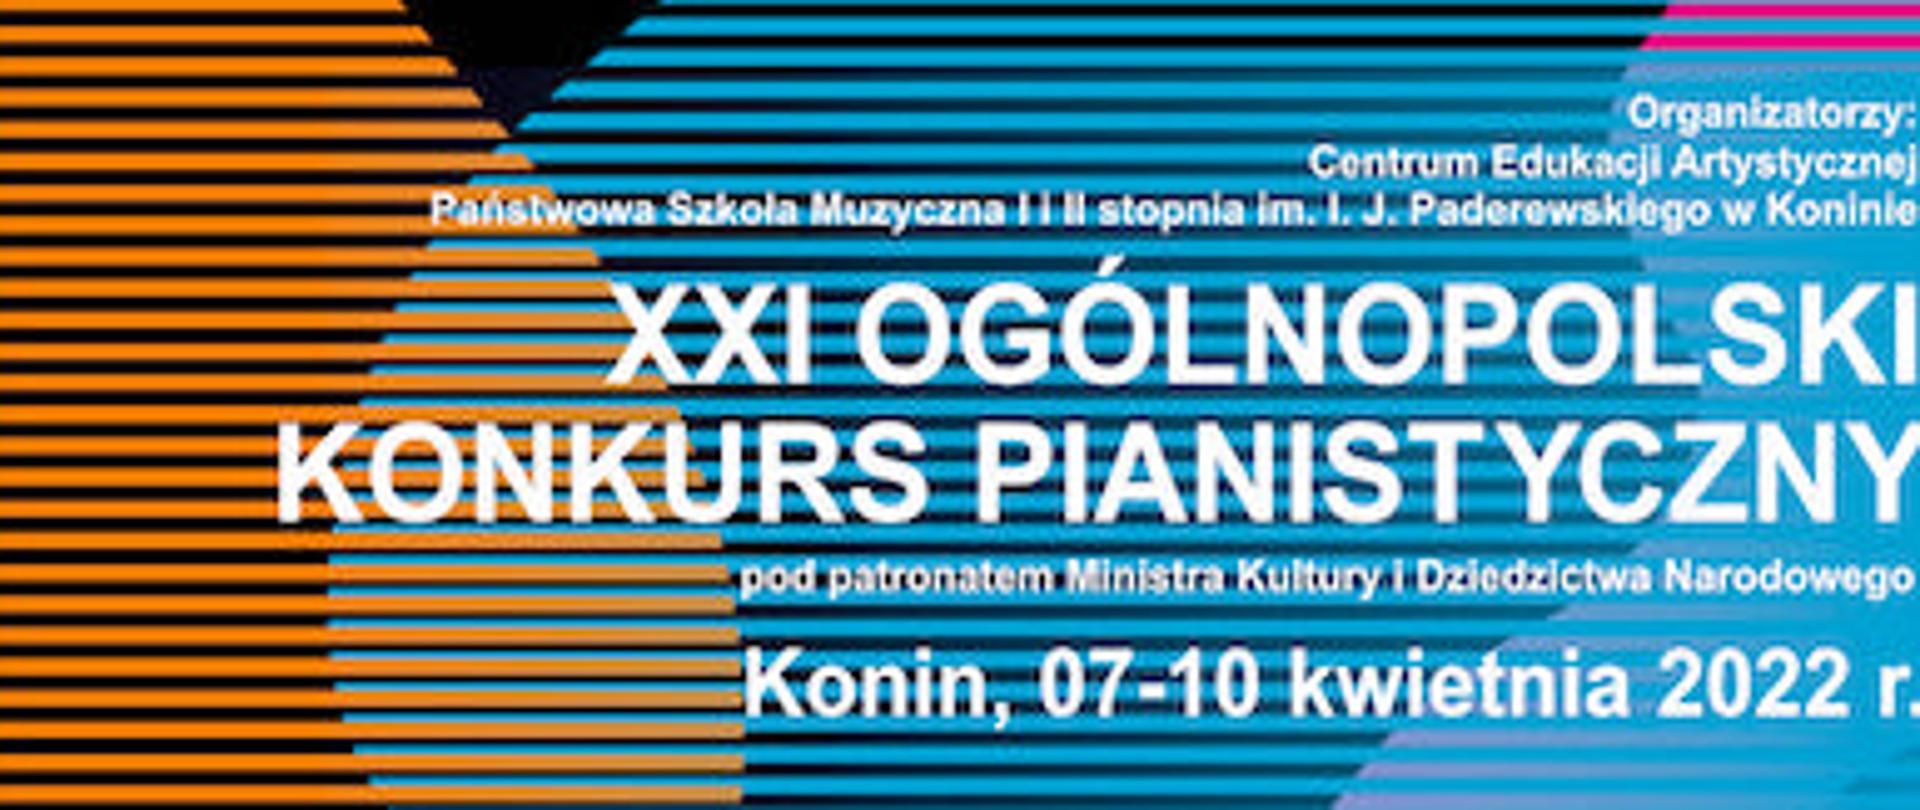 Plakat przedstawiający informacje na temat ogólnopolskiego konkursu pianistycznego , tekst na tle pomarańczowo, niebiesko, różowo- żółtym. poziome linie. 